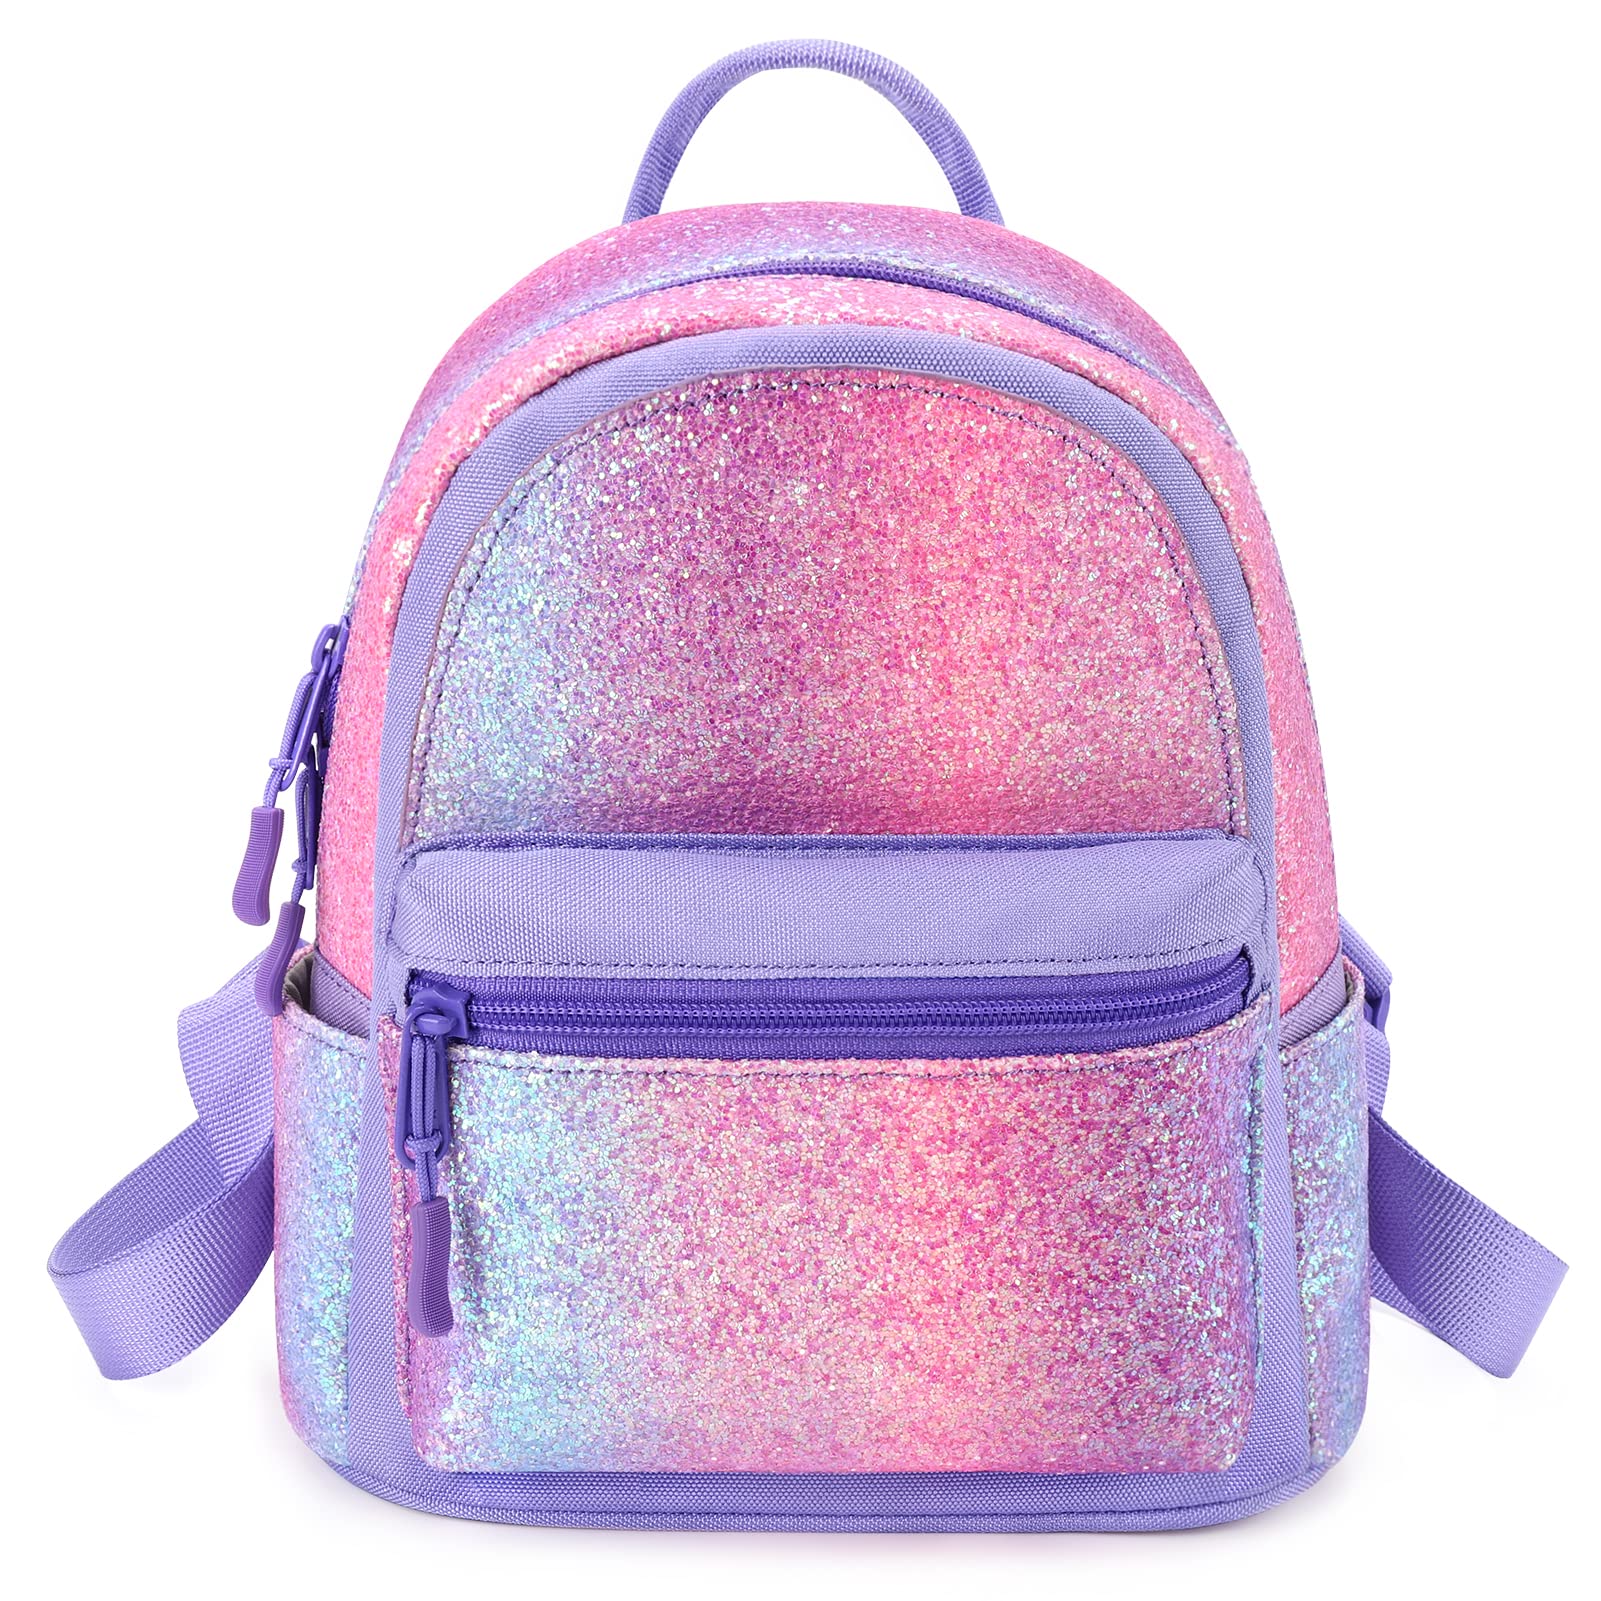 Bari Lynn Kid's Flip The Glitters Rainbow Mini Backpack, Backpacks & Bags Backpacks